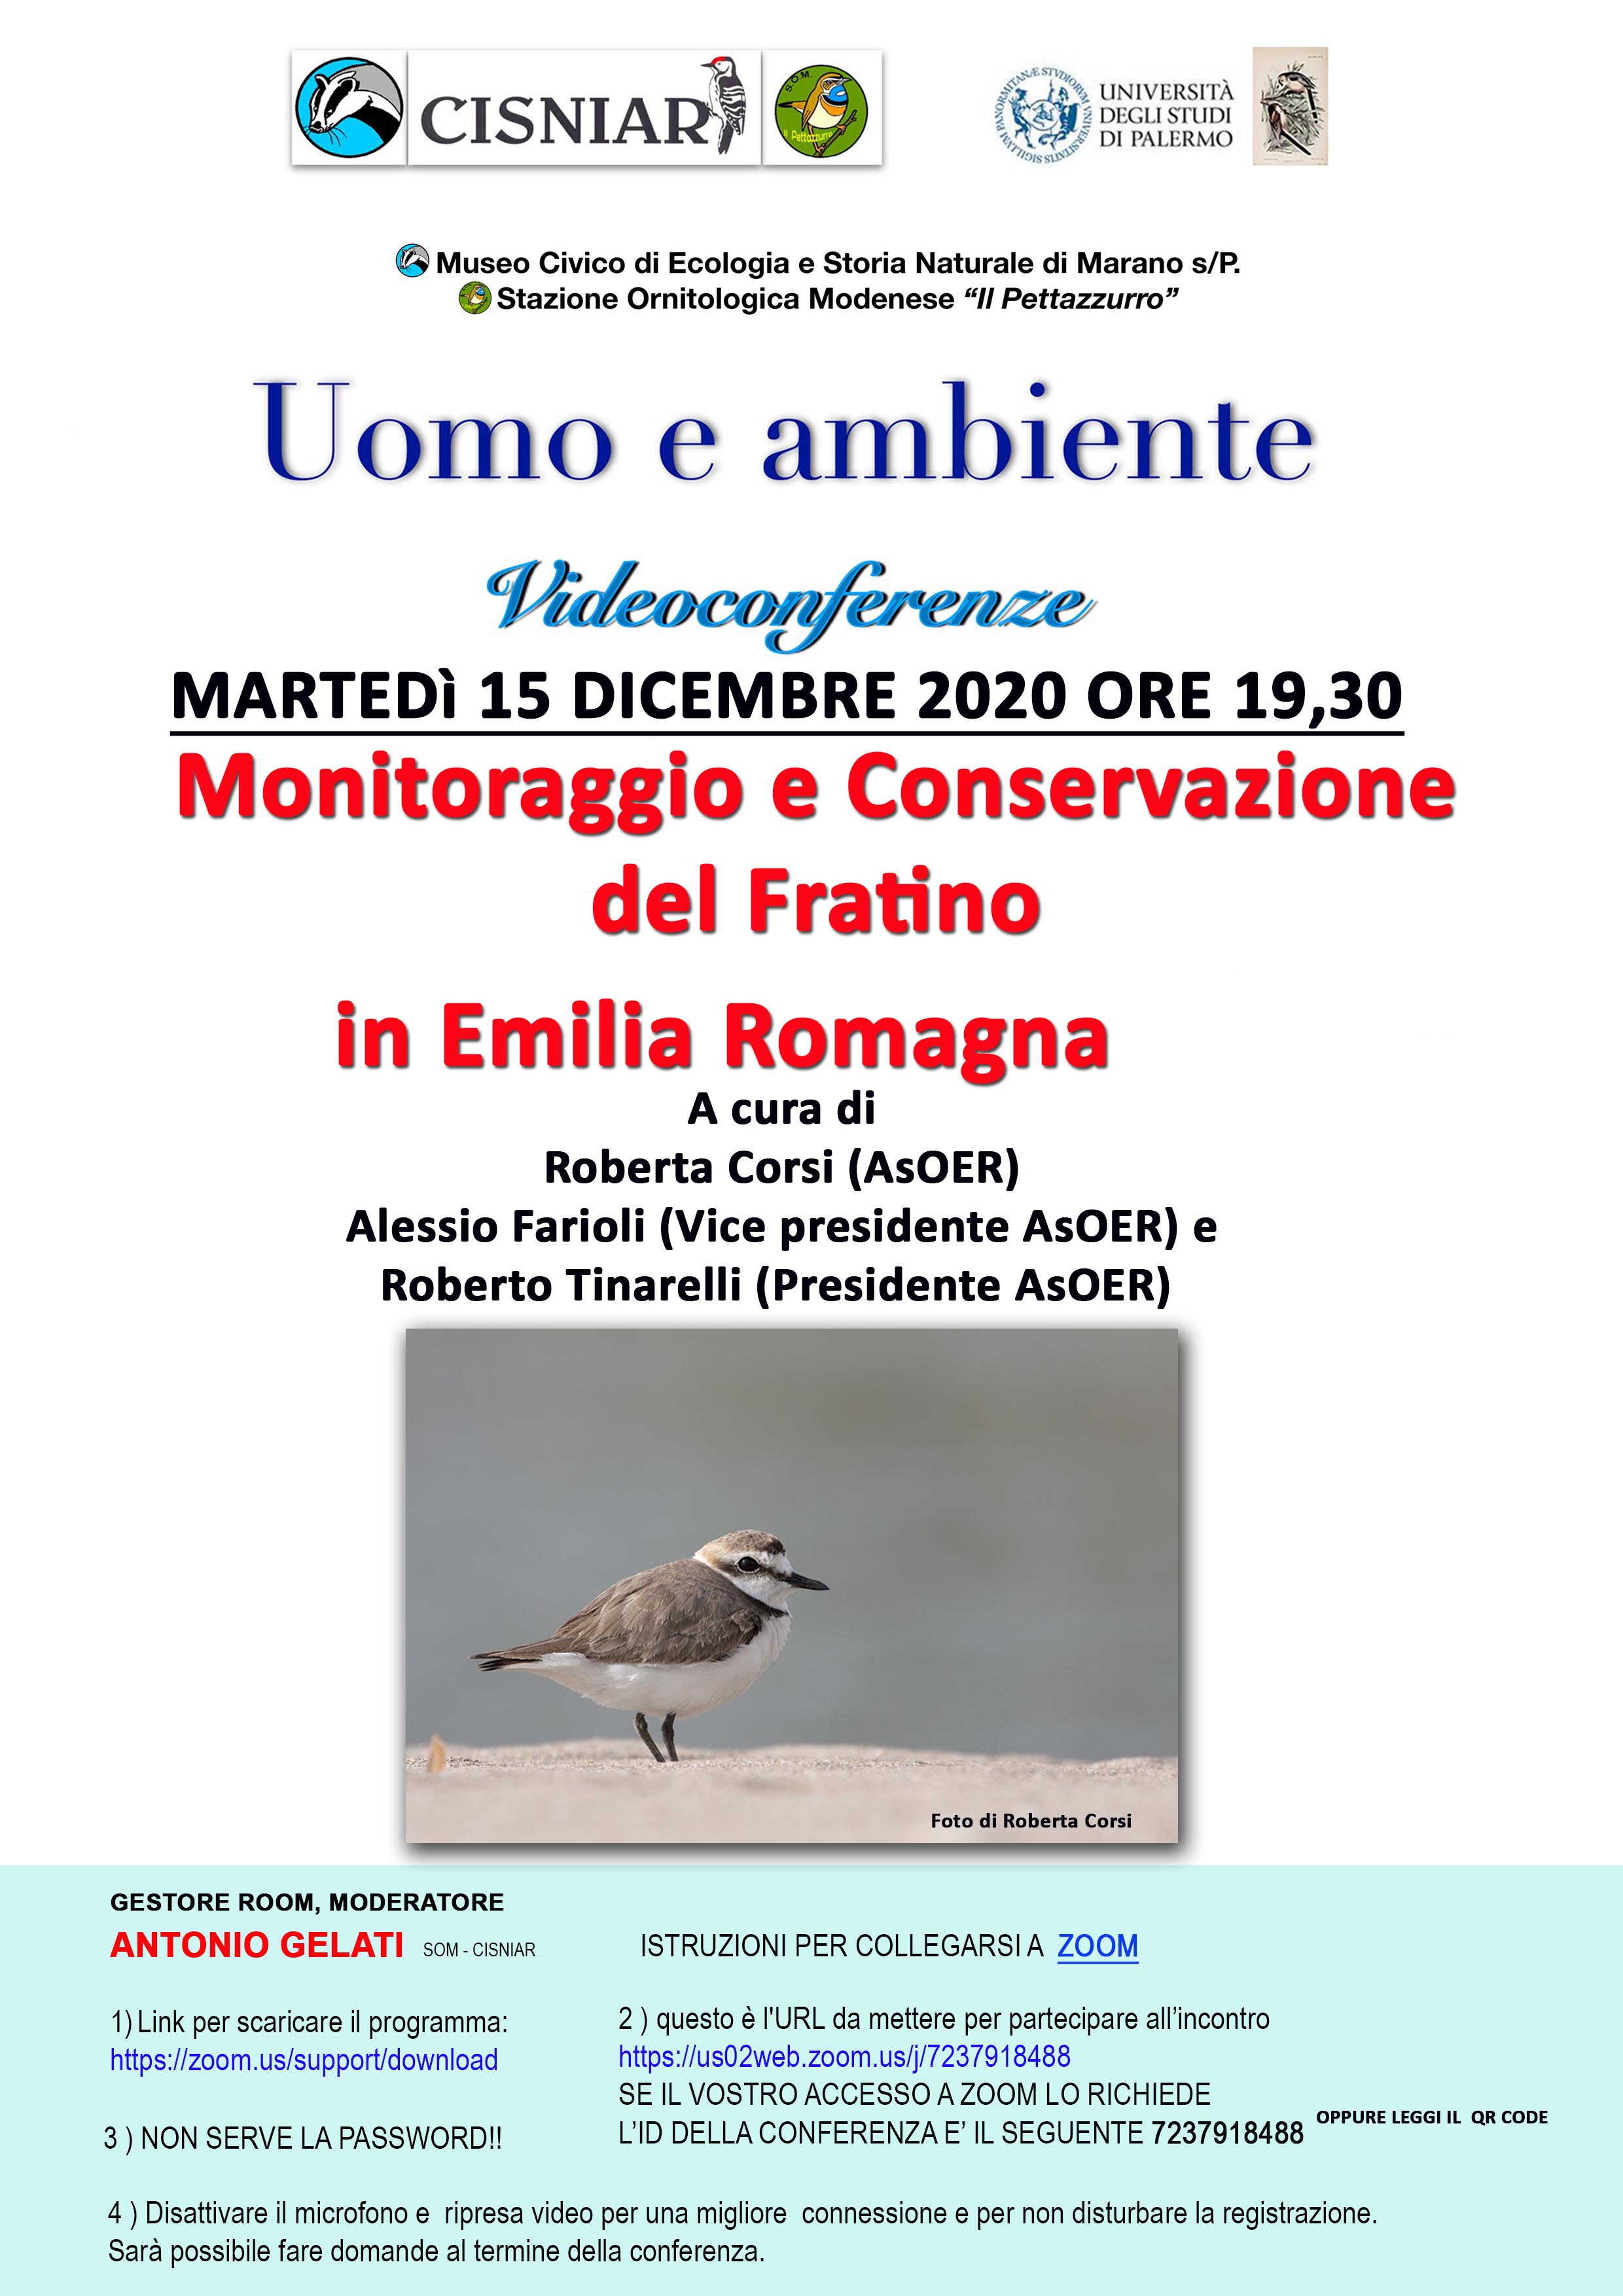 15 dicembre monitoraggio del Fratino - Tinarelli-Farioli